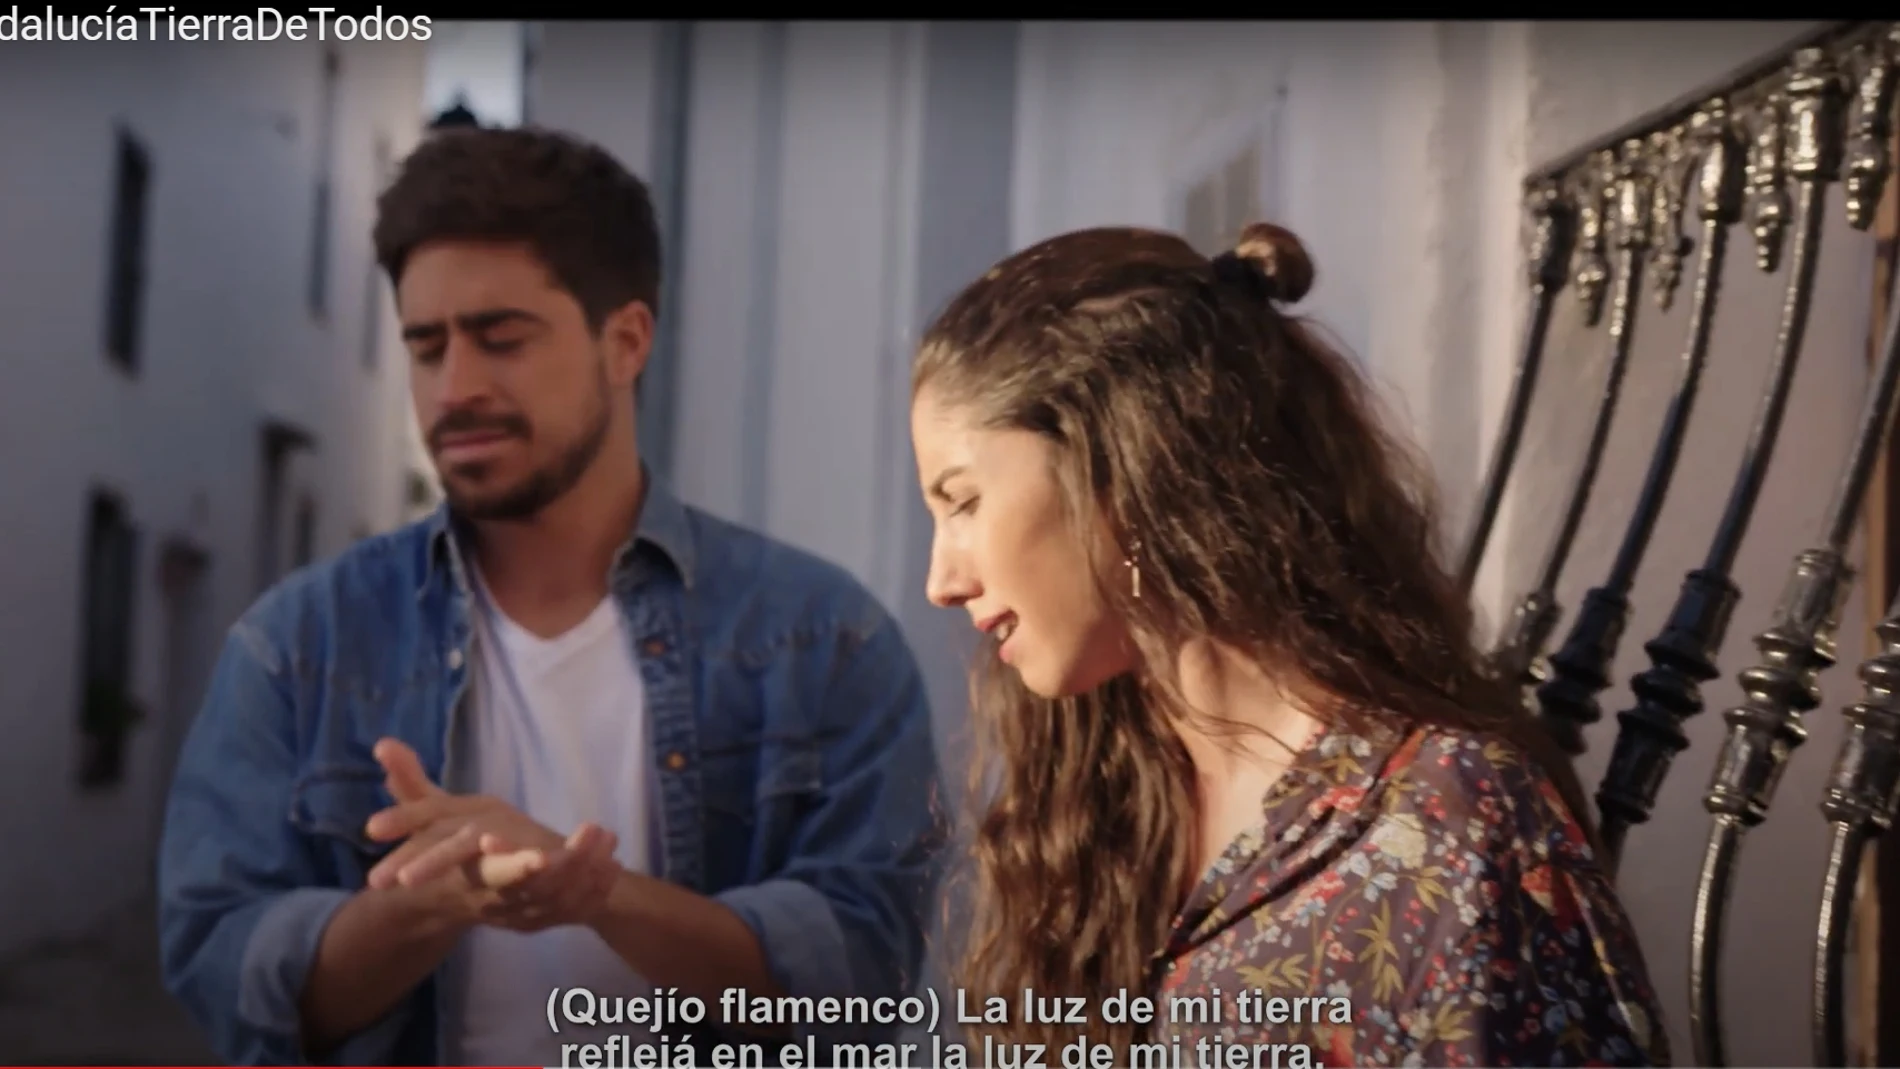 Captura del nuevo vídeo de la Junta de Andalucía